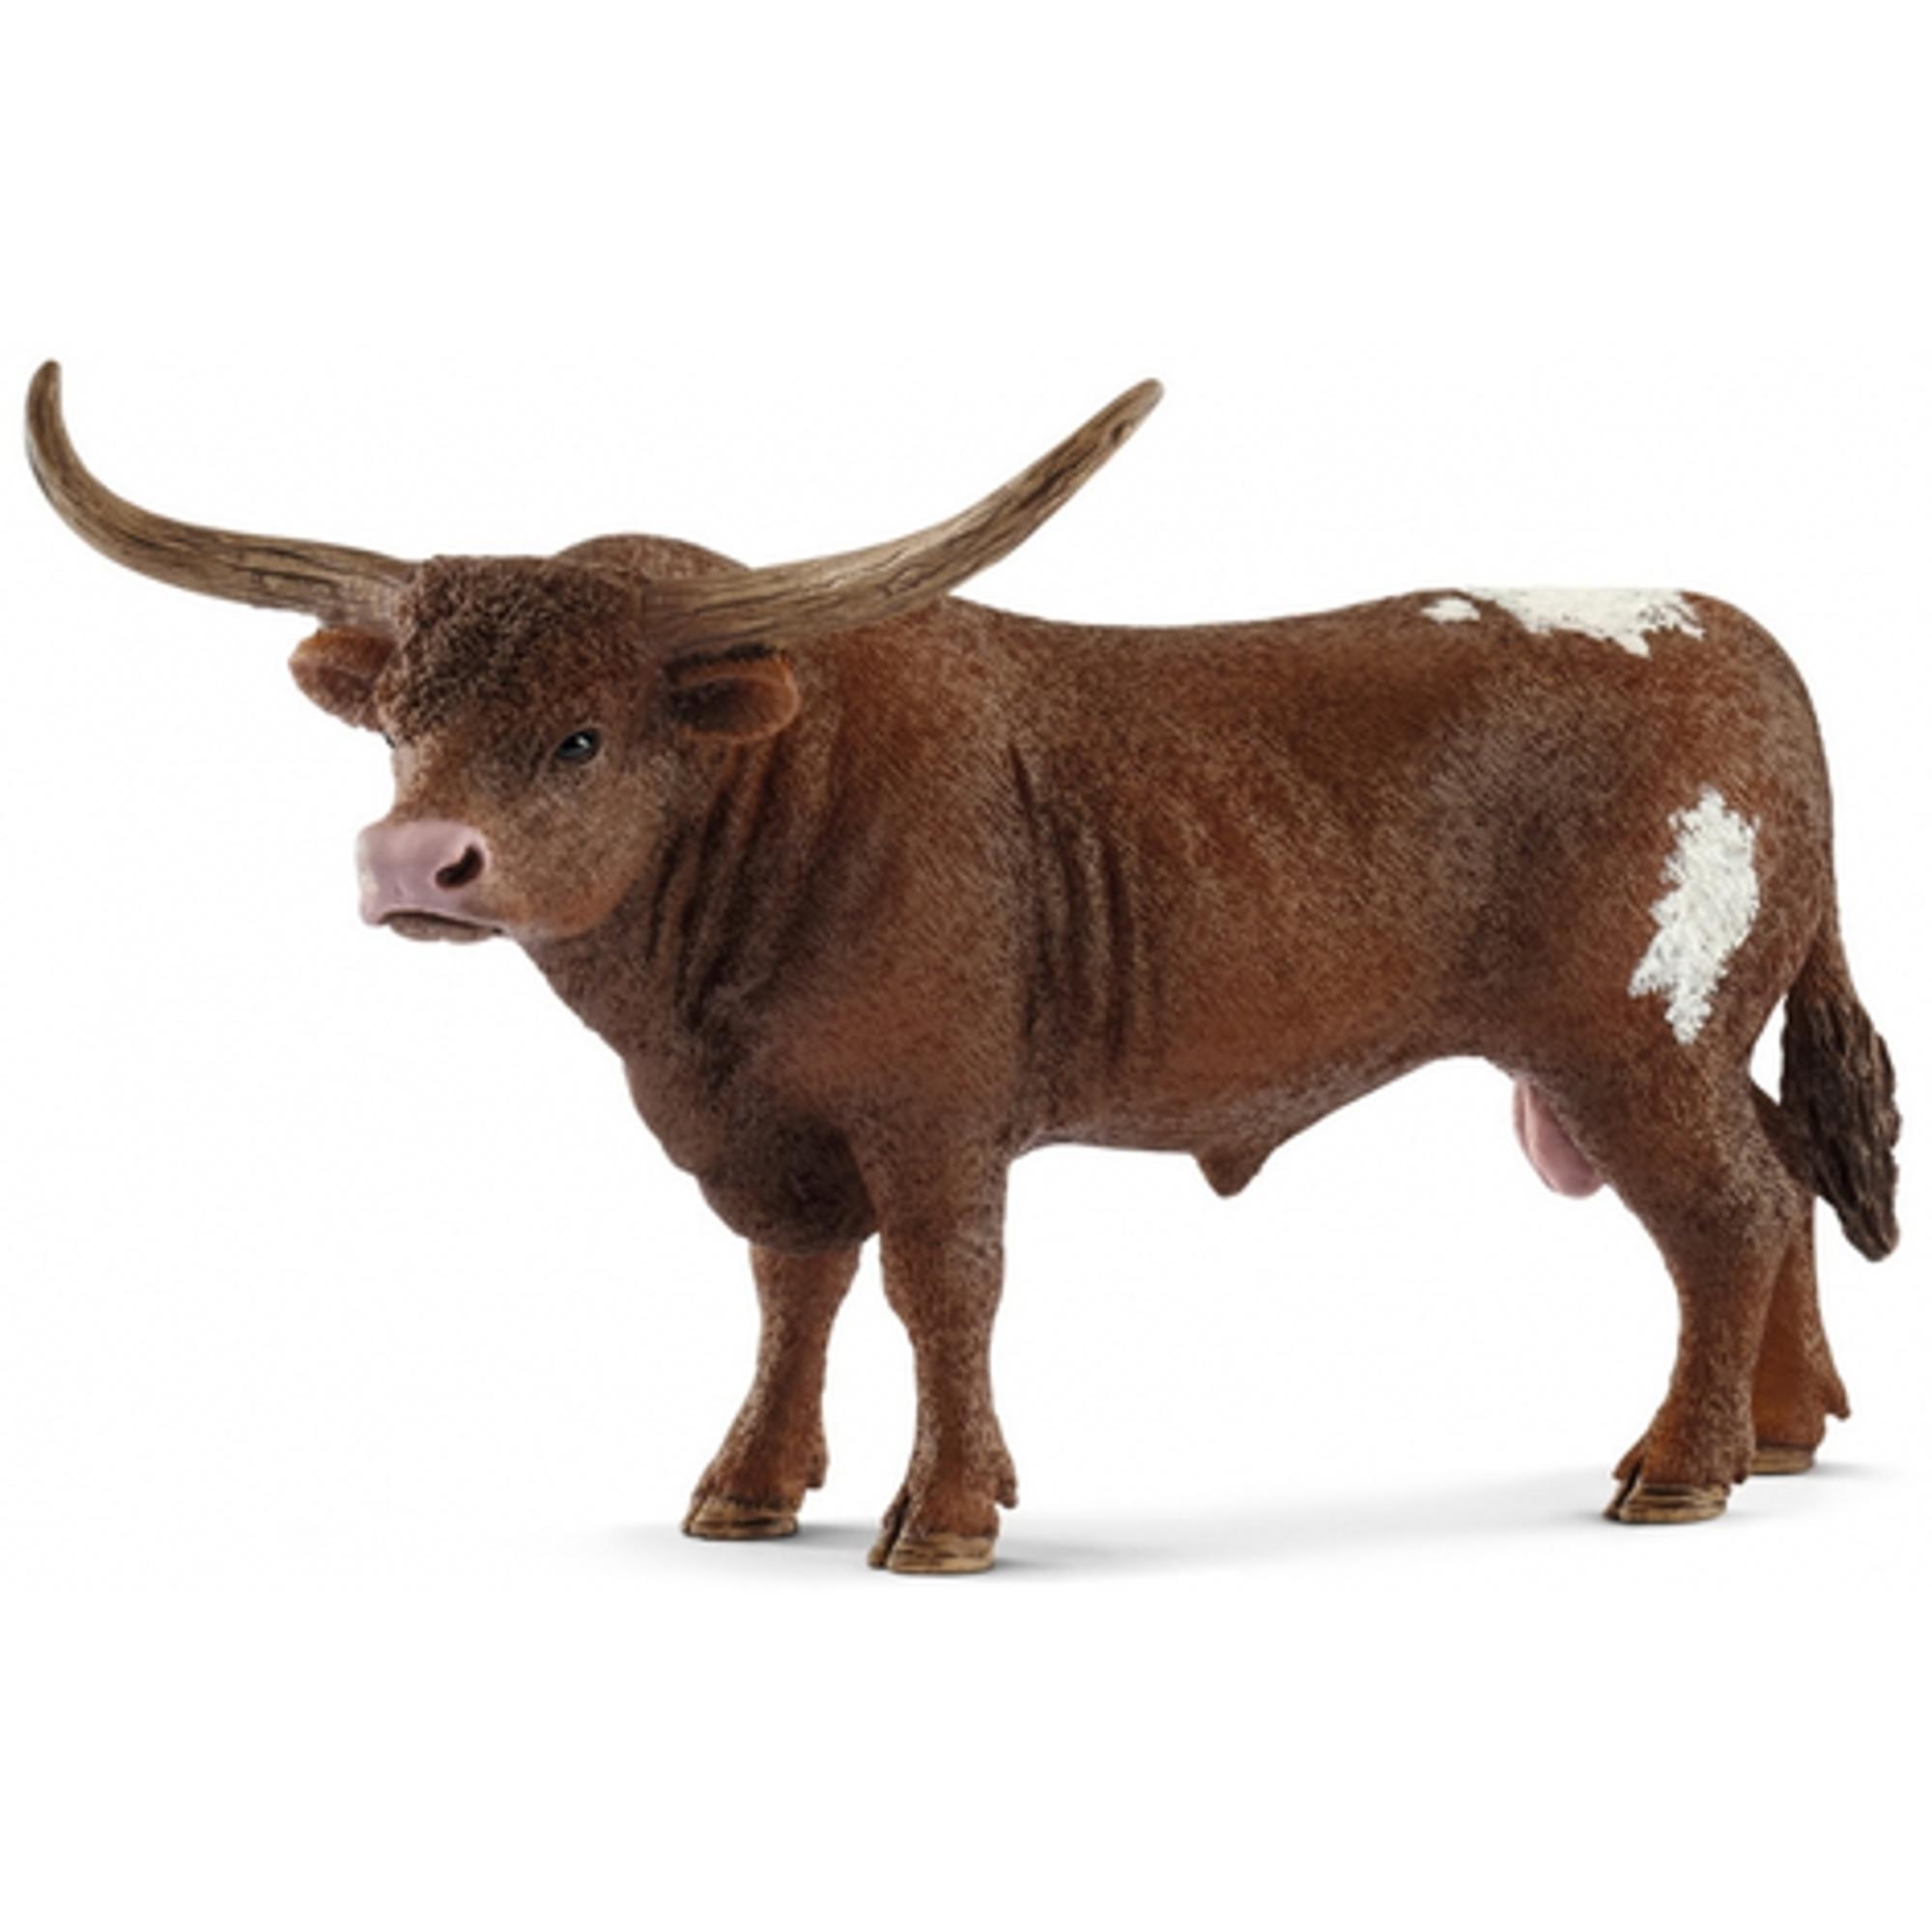 Texas Longhorn Bull 2018